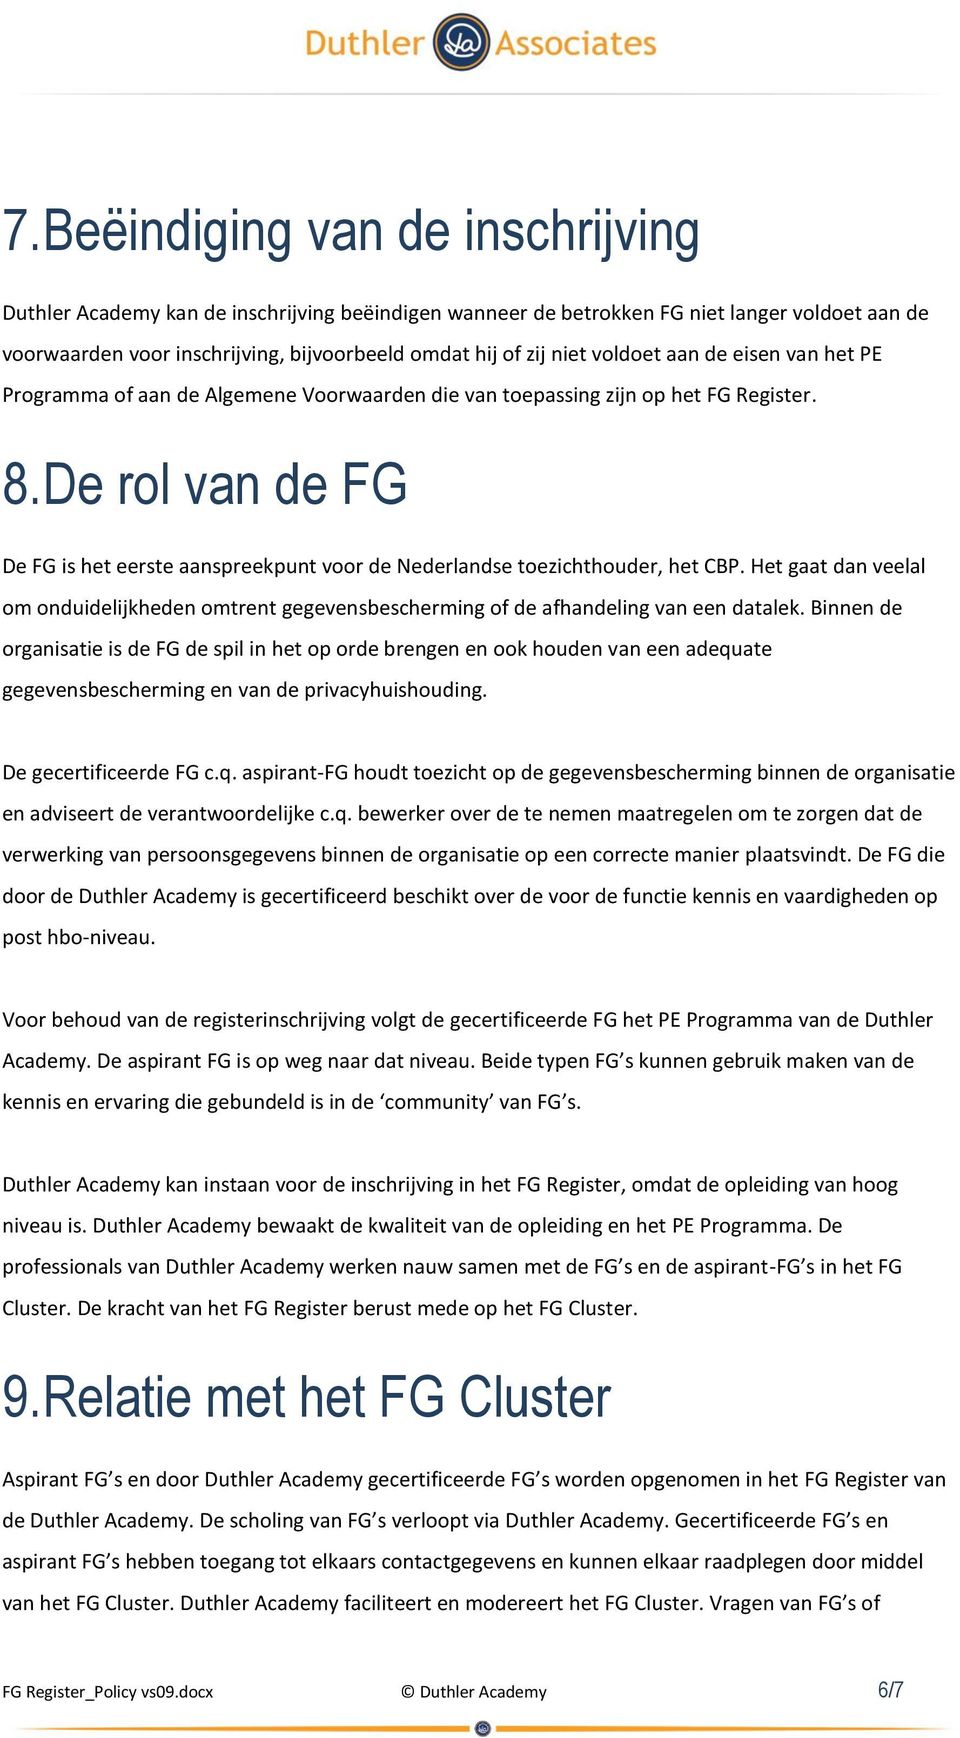 De rol van de FG De FG is het eerste aanspreekpunt voor de Nederlandse toezichthouder, het CBP. Het gaat dan veelal om onduidelijkheden omtrent gegevensbescherming of de afhandeling van een datalek.